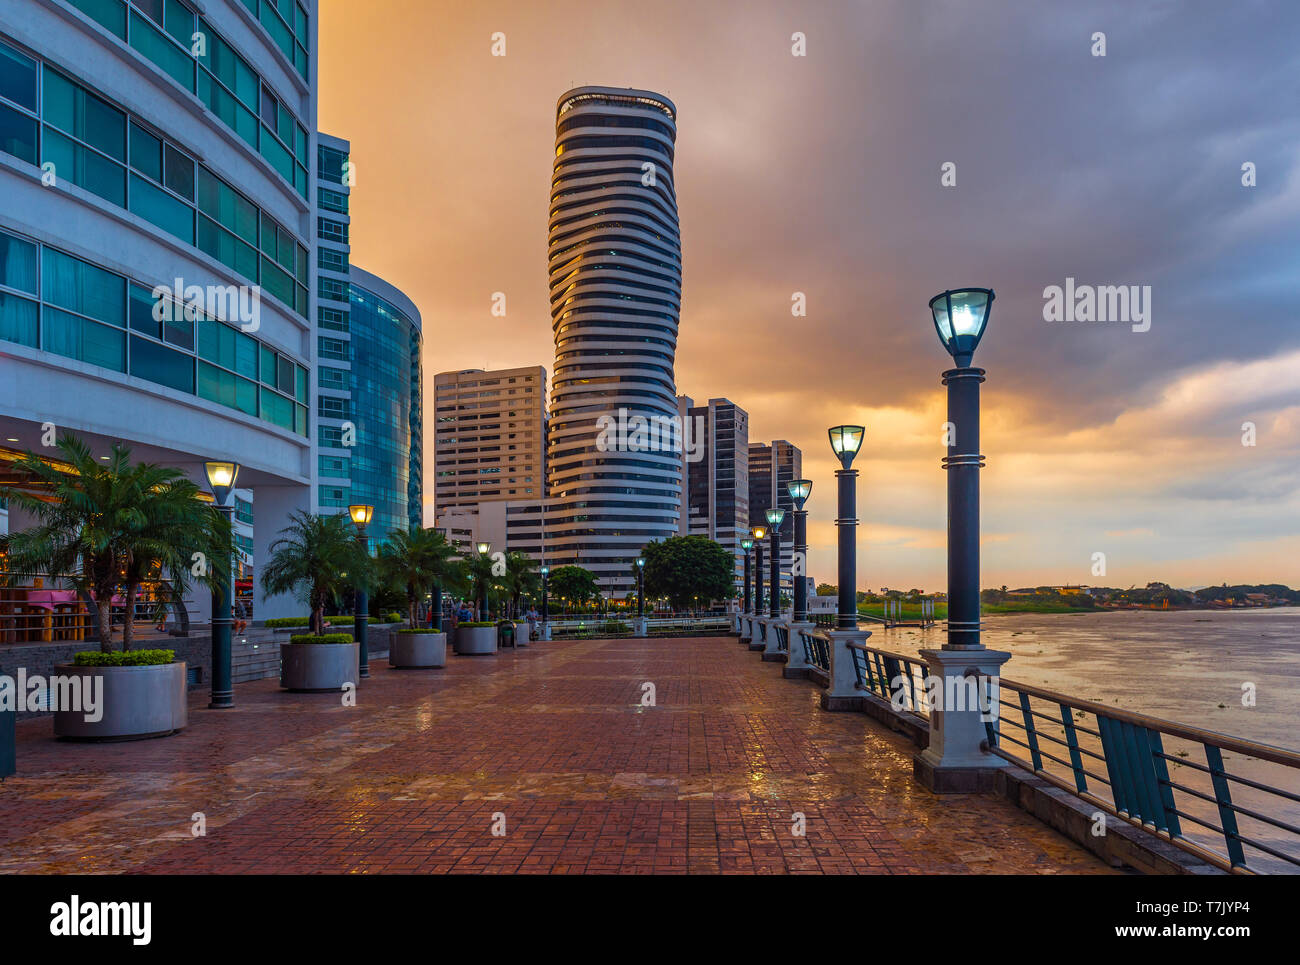 Paesaggio urbano della città di Guayaquil al tramonto con il Malecon 2000 Waterfront, il fiume Guayas e il punto grattacielo dopo un temporale, Ecuador. Foto Stock